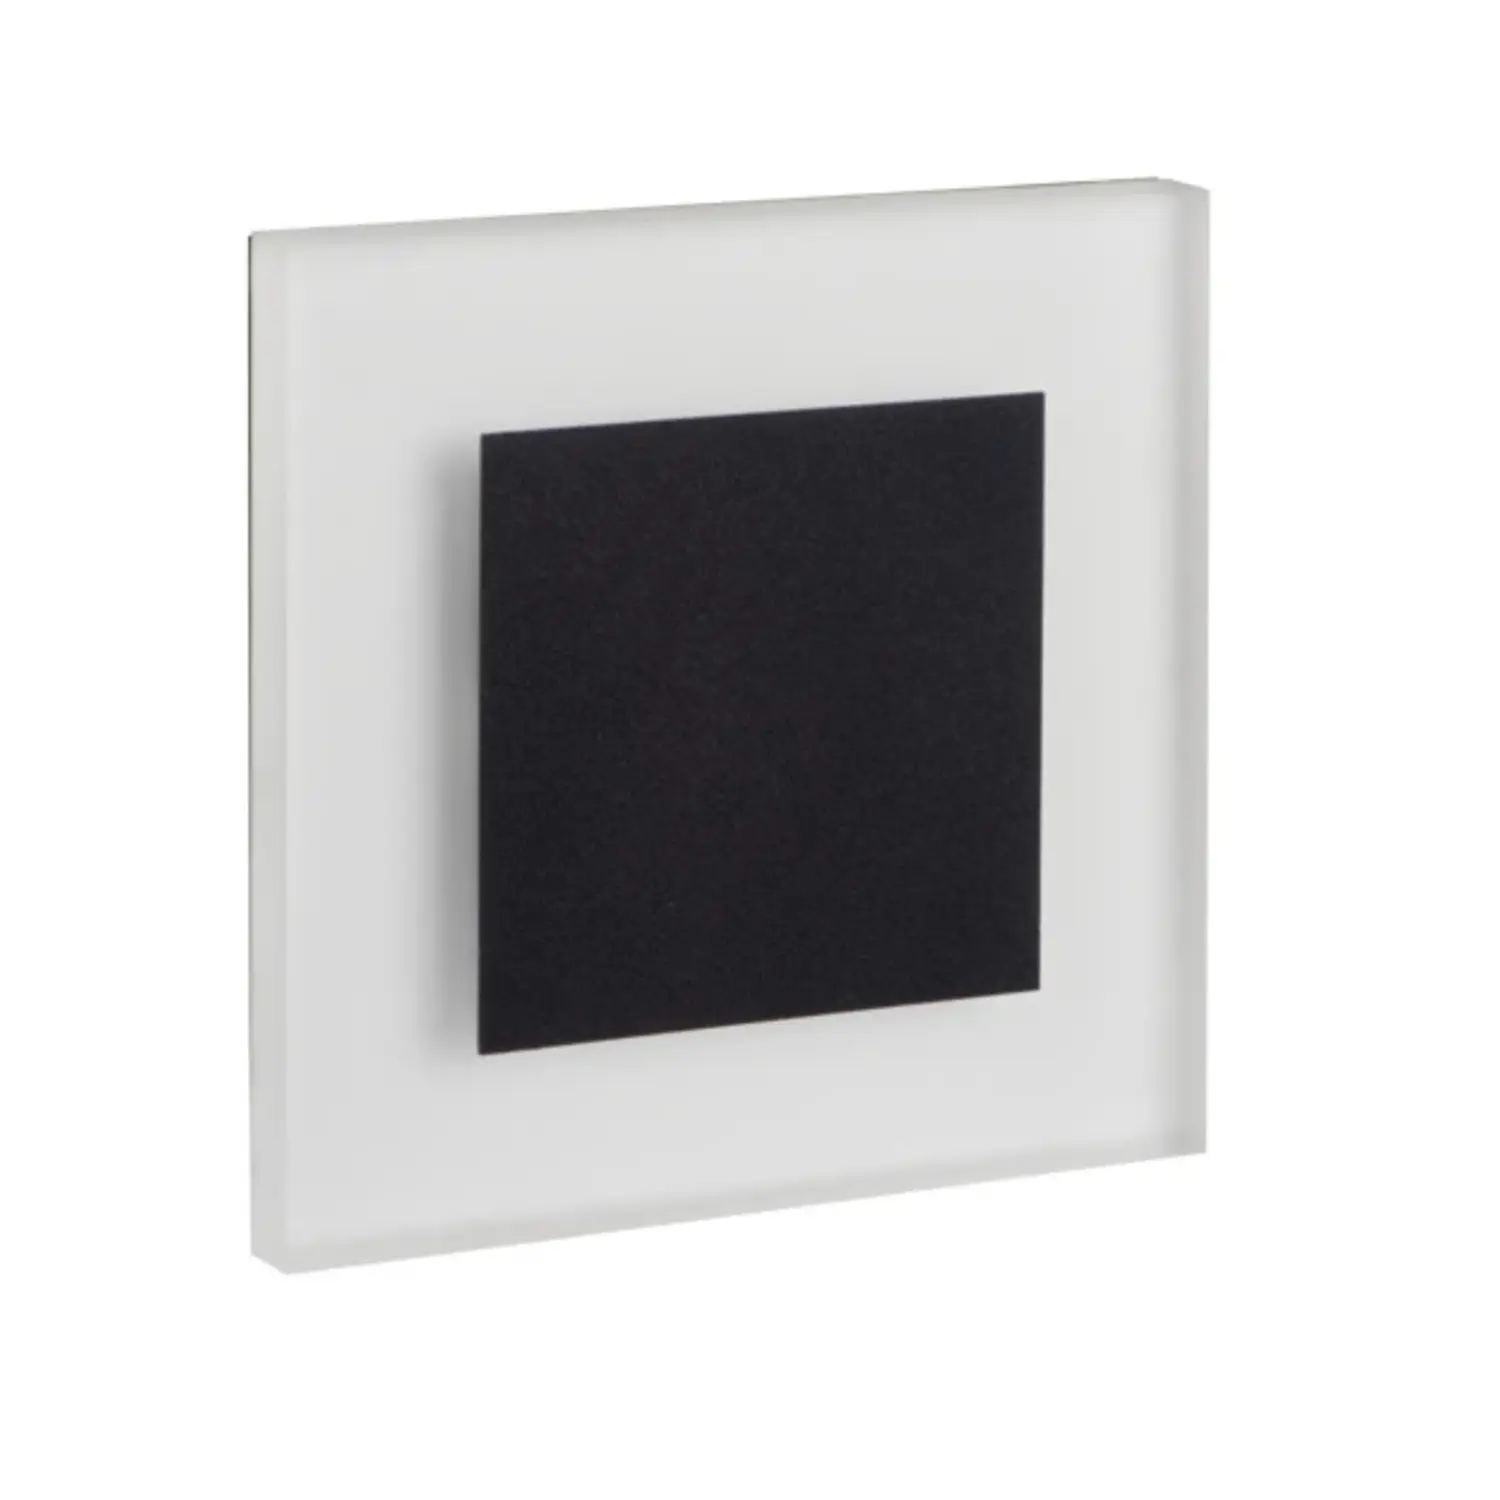 immagine del prodotto segnapasso da incasso led 0,80 watt 12 volt bianco naturale nero quadrato